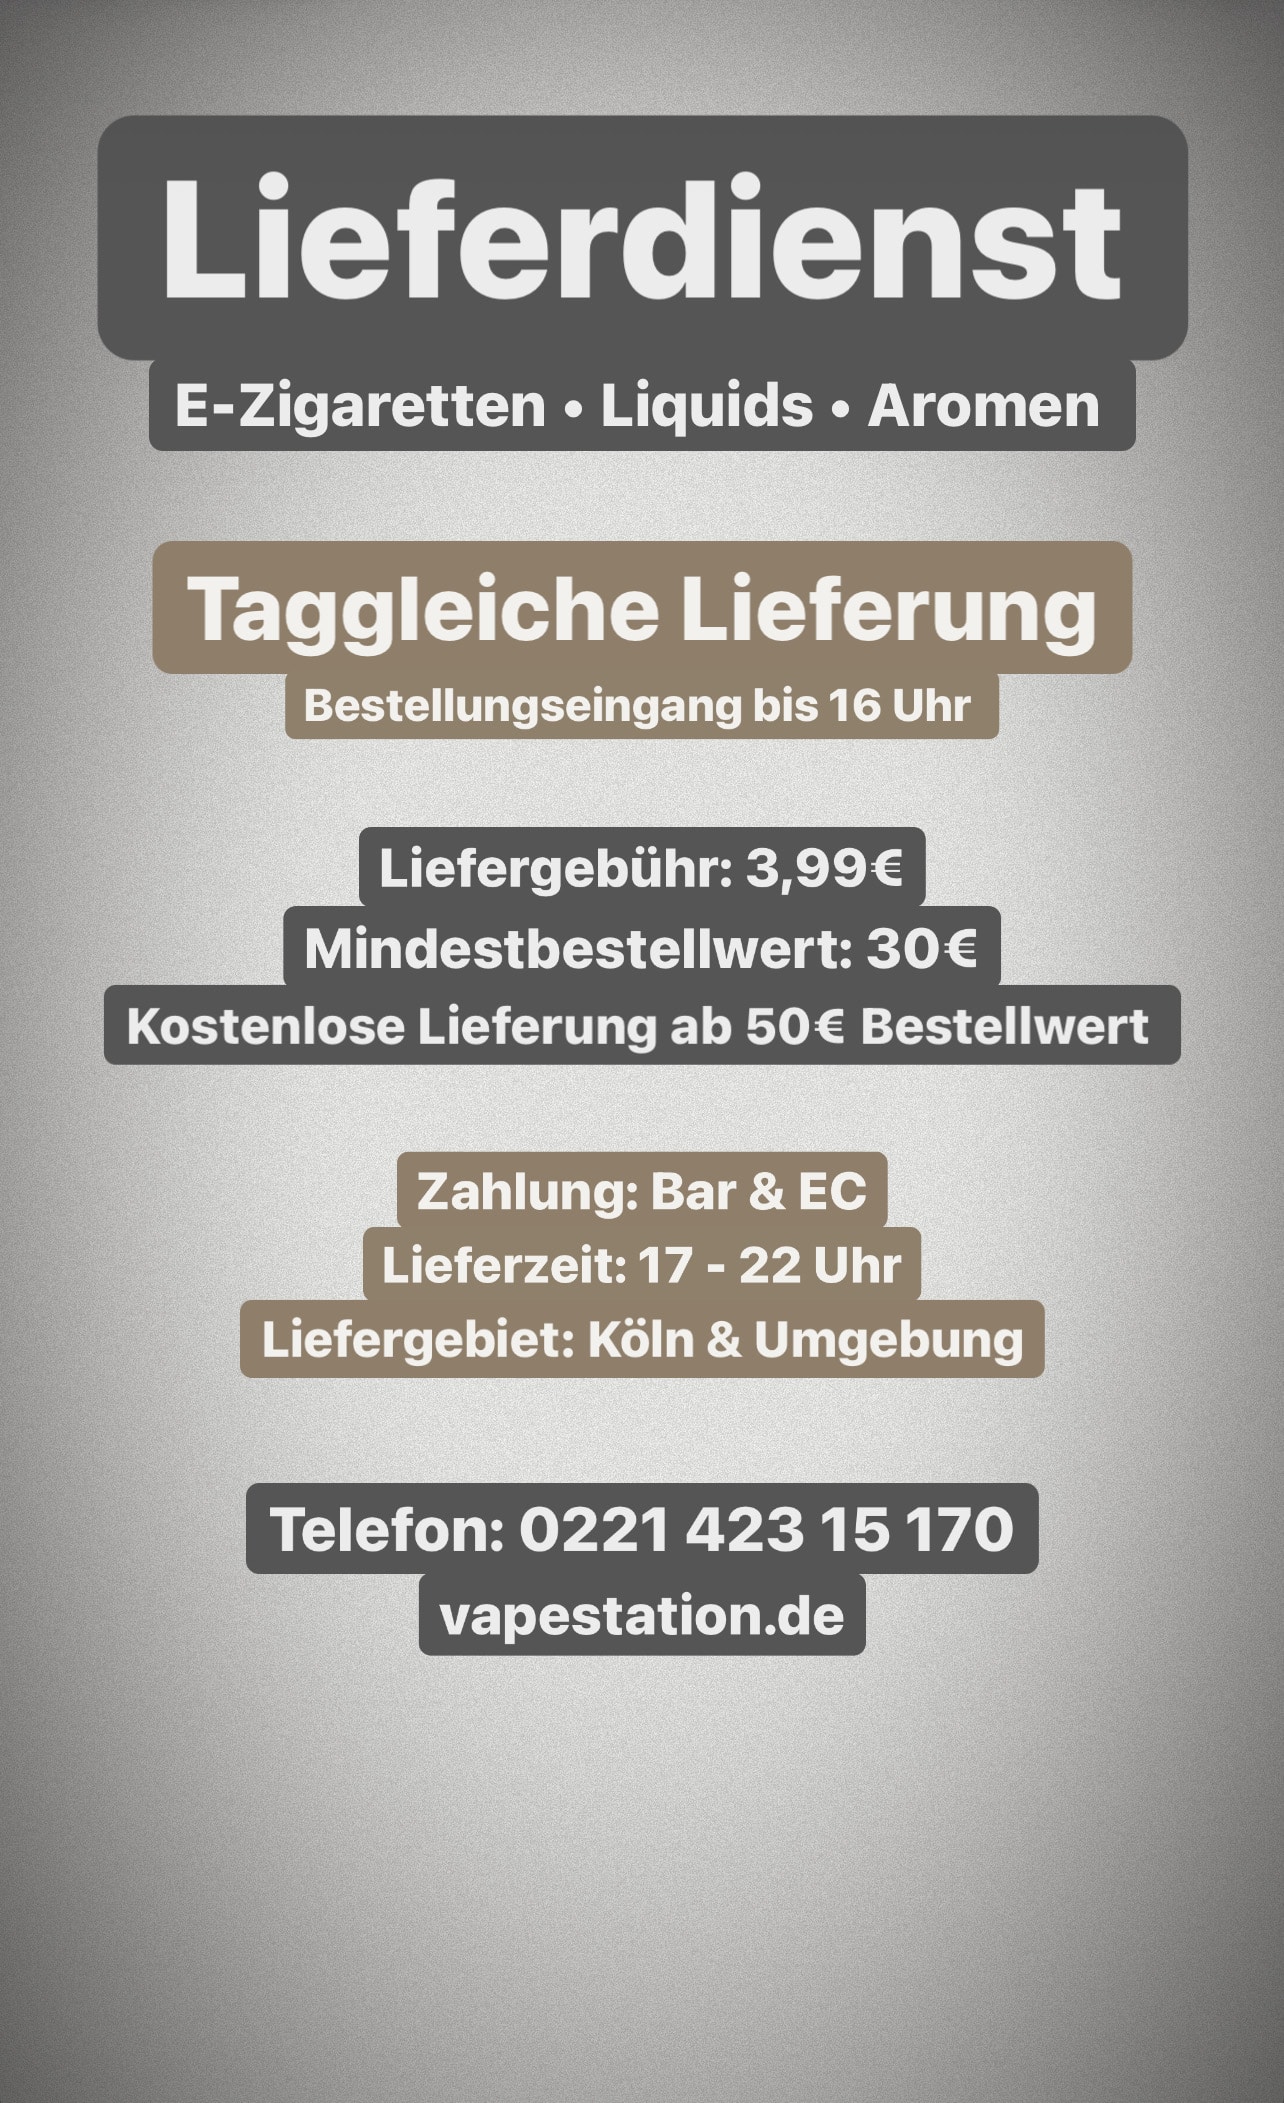 Lieferdienst für E-Zigaretten, Aromen und Liquids in Köln - Taggleiche Lieferung